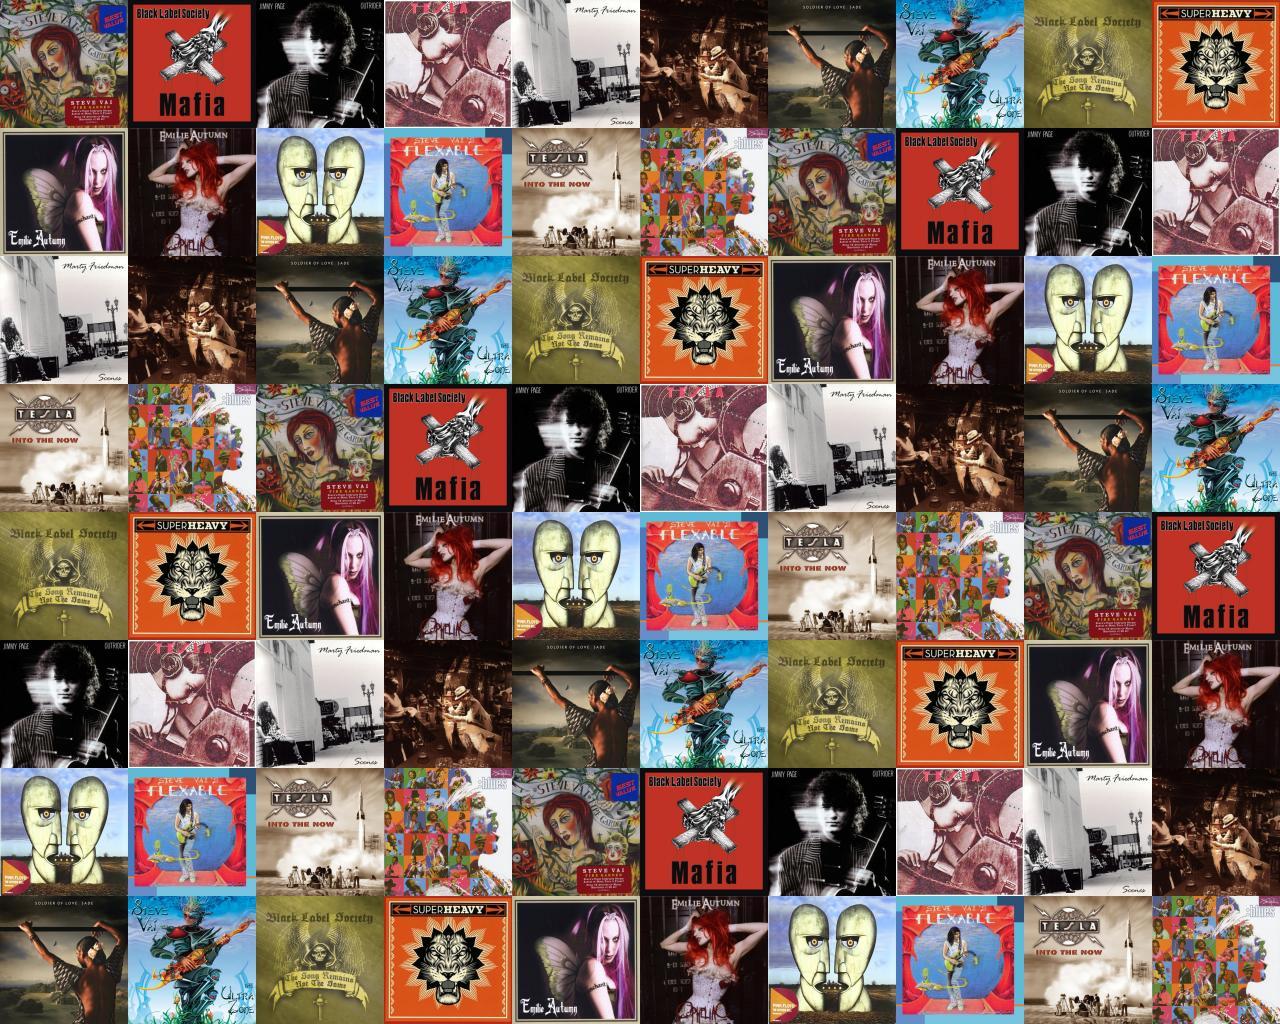 Steve Vai Fire Garden Black Label Society Mafia Wallpaper « Tiled